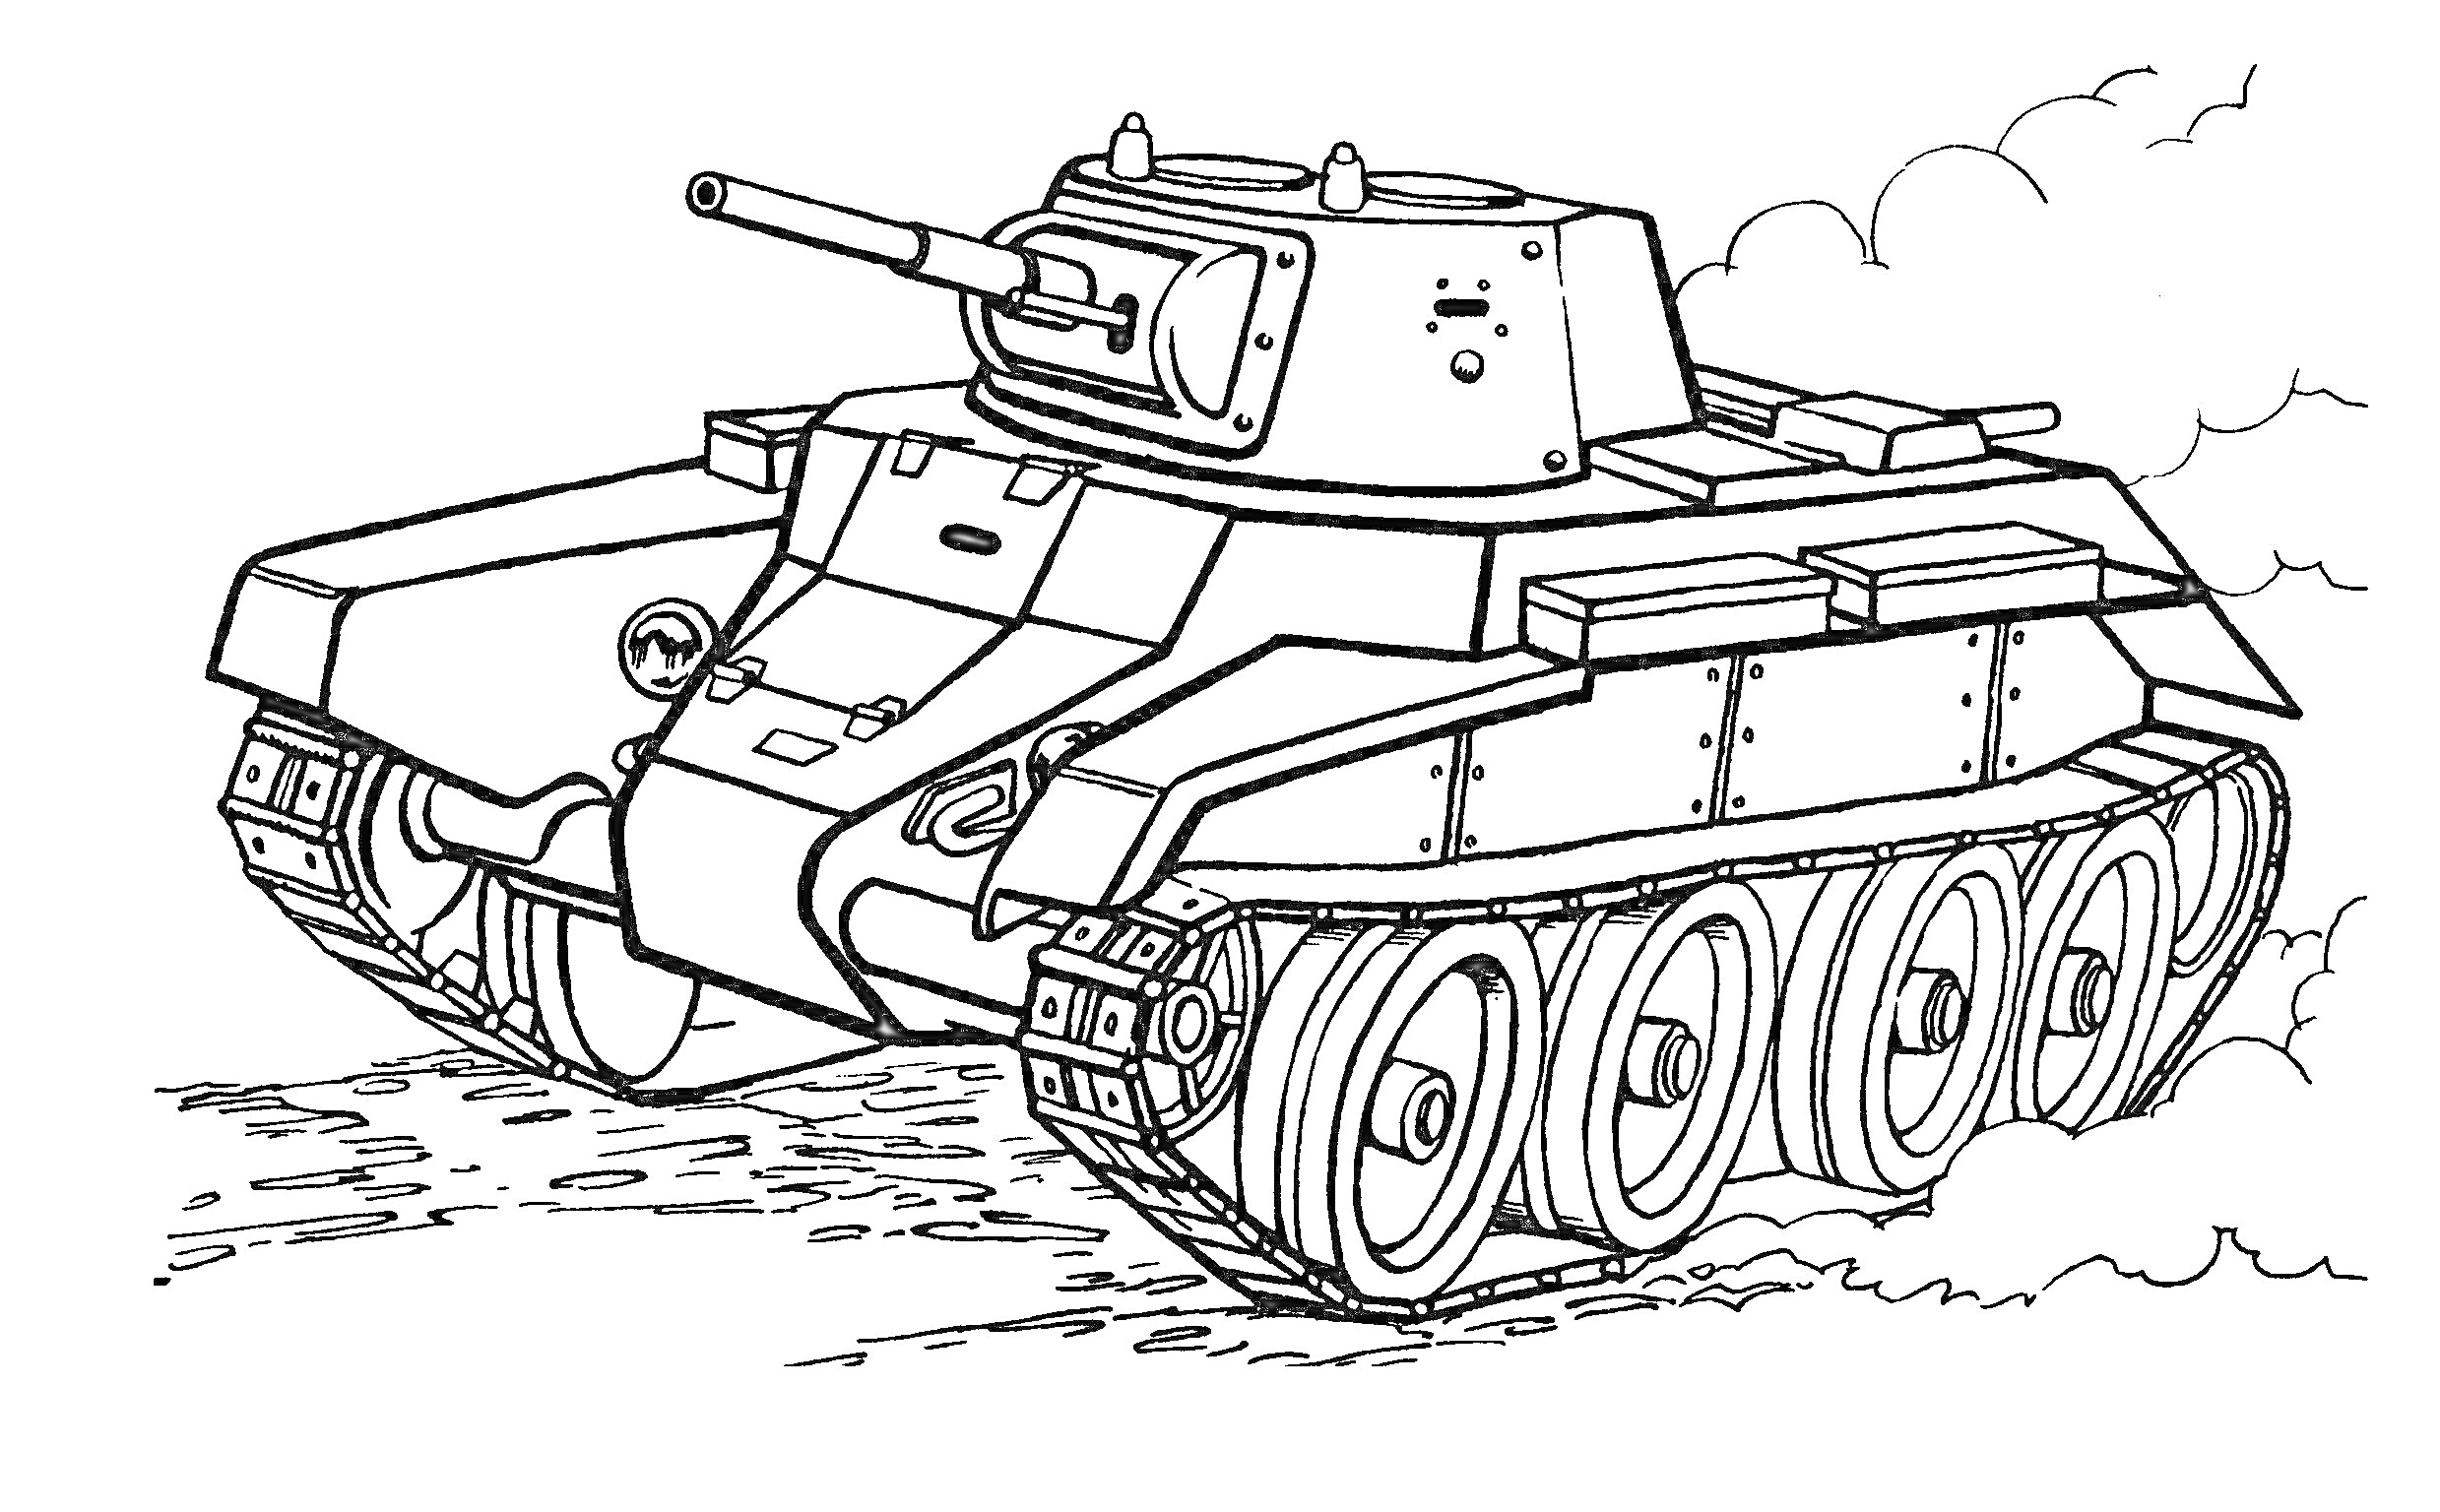 Раскраска Танковая раскраска с средневековым танком на колесах, пушкой и гусеницами, поднятие дыма сзади